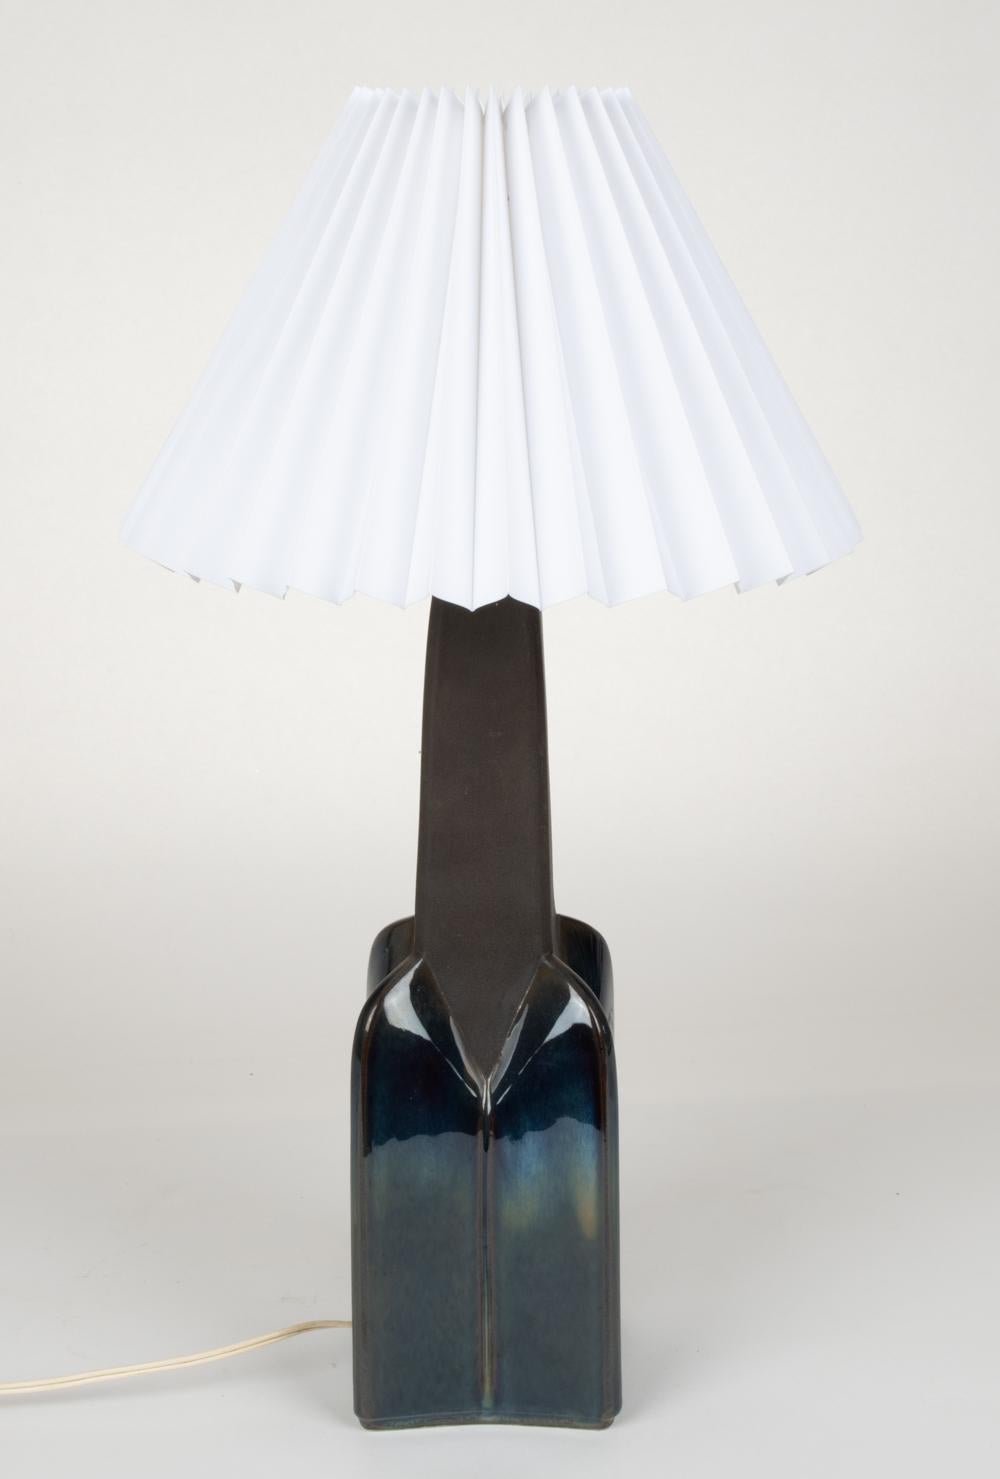 Danish Søholm Stentøj Ceramic Table Lamp, Denmark, 1960s